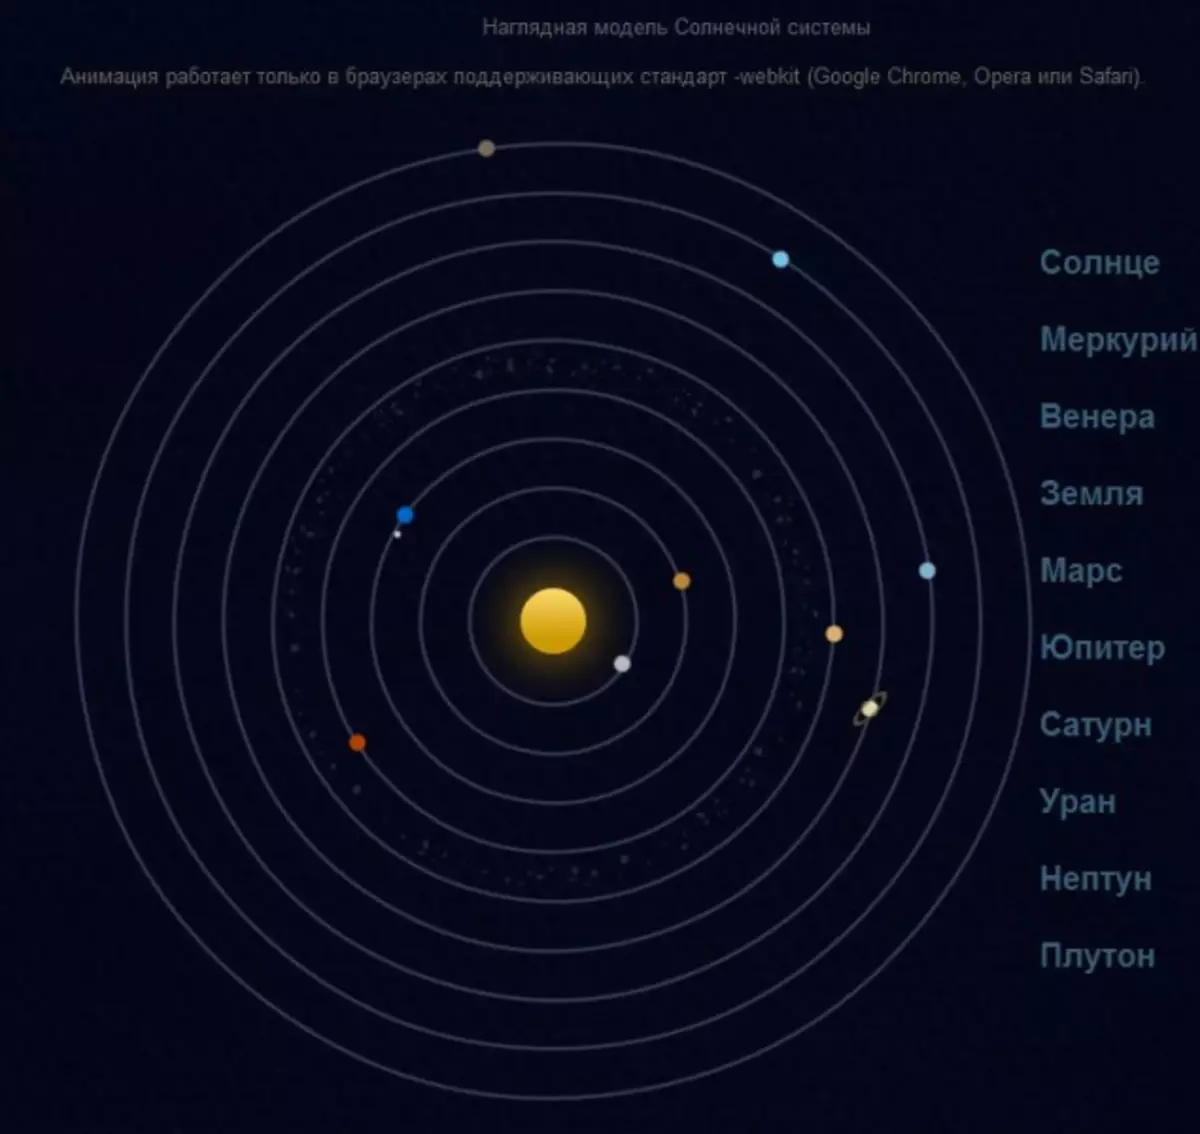 Местоположение планет. Орбиты планет солнечной системы в масштабе. Карта солнечной системы. Макет солнечной системы. Солнечная система схема.